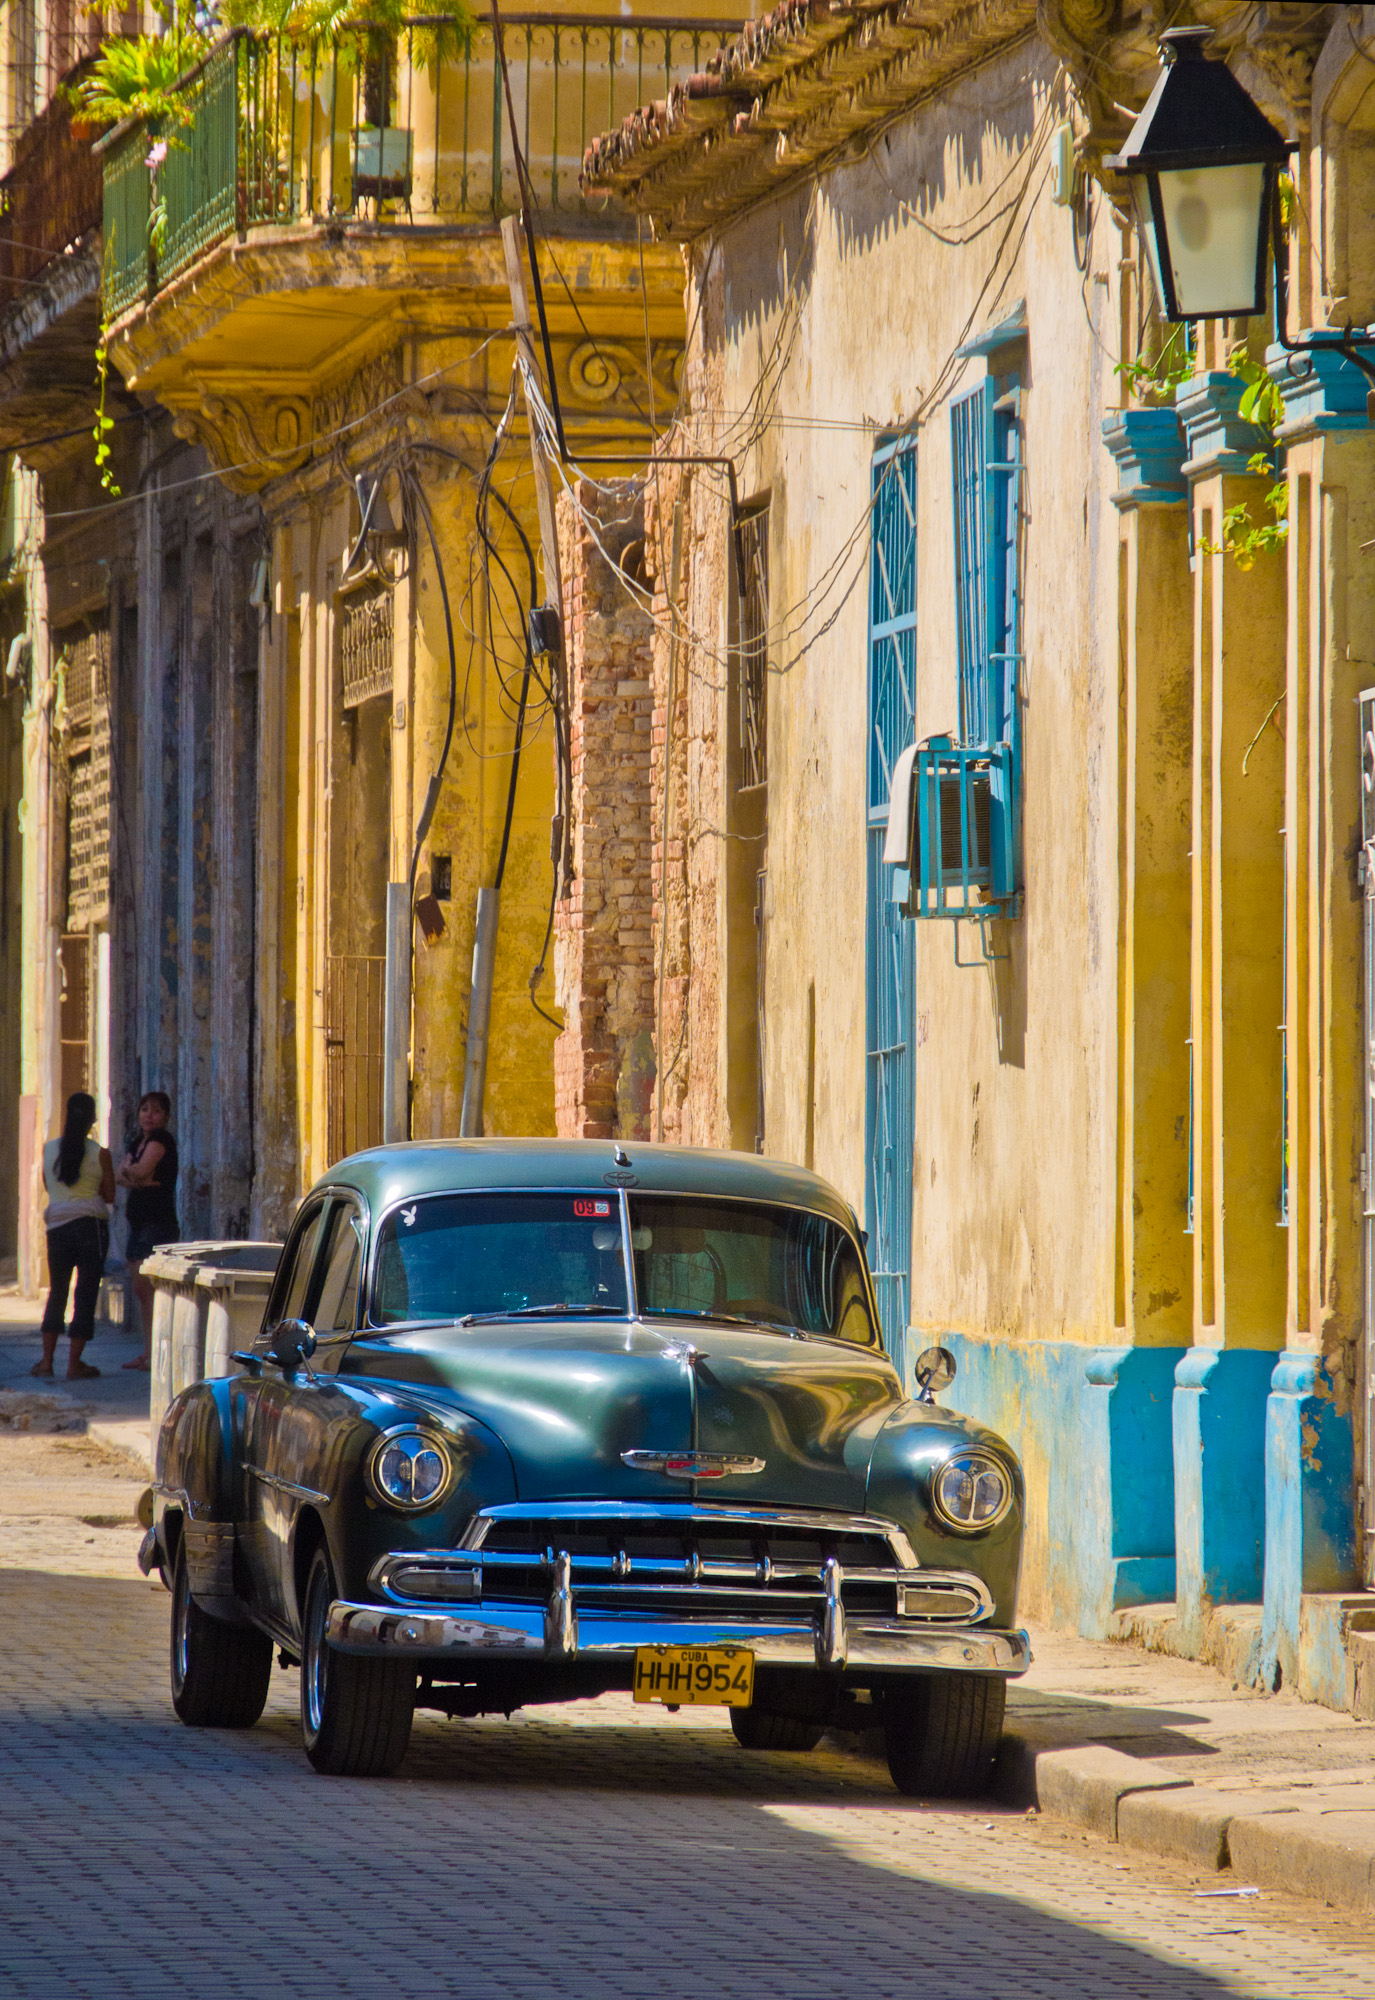 Bill_Barnett_Old Car in Havana.jpg